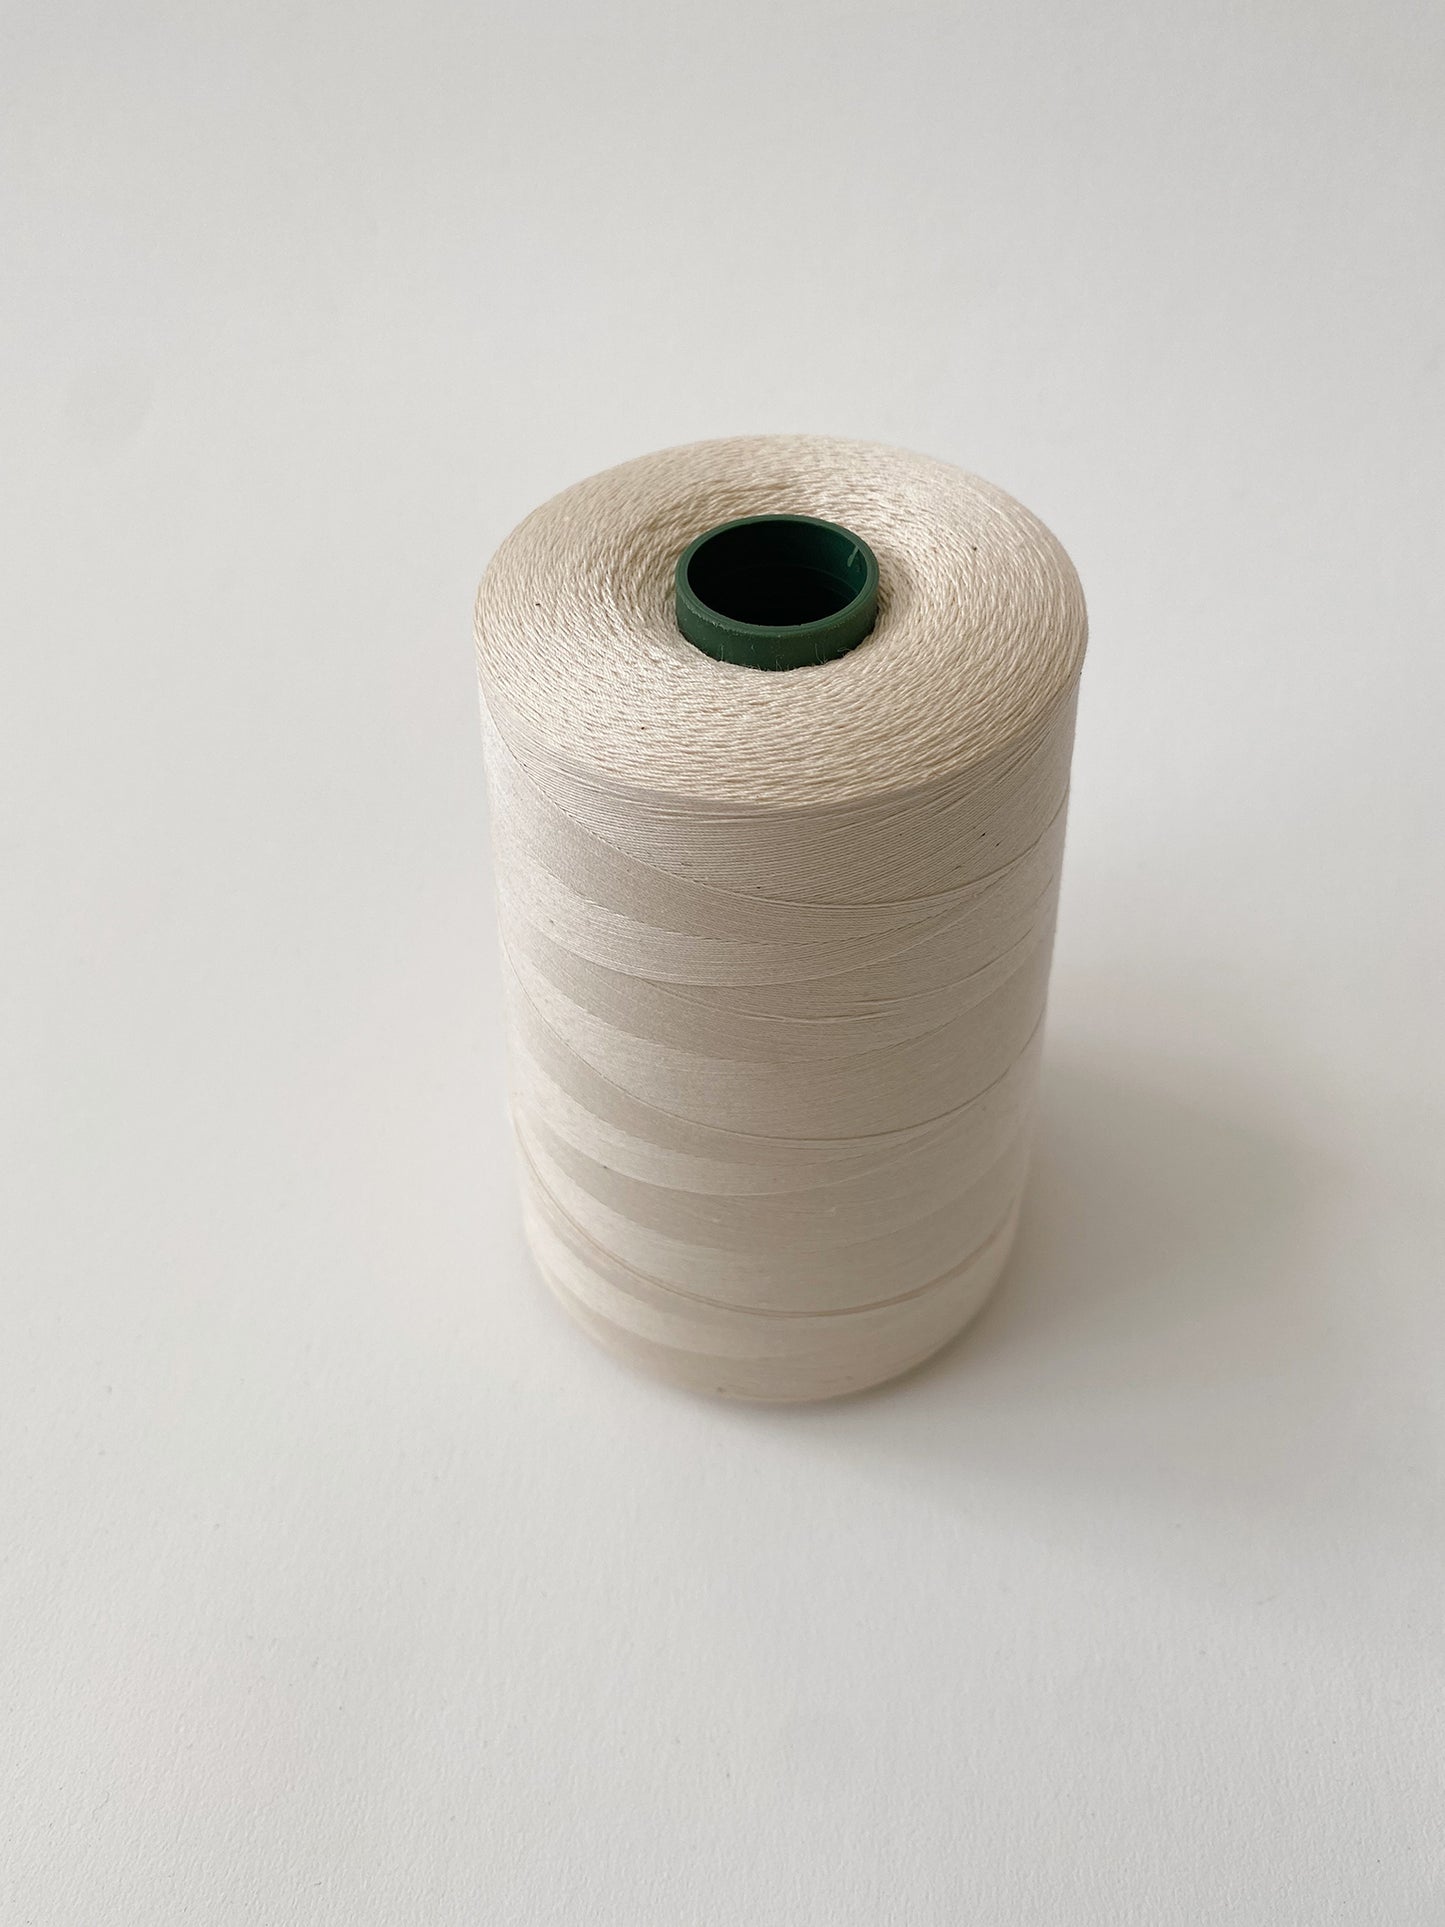 Sewing Thread